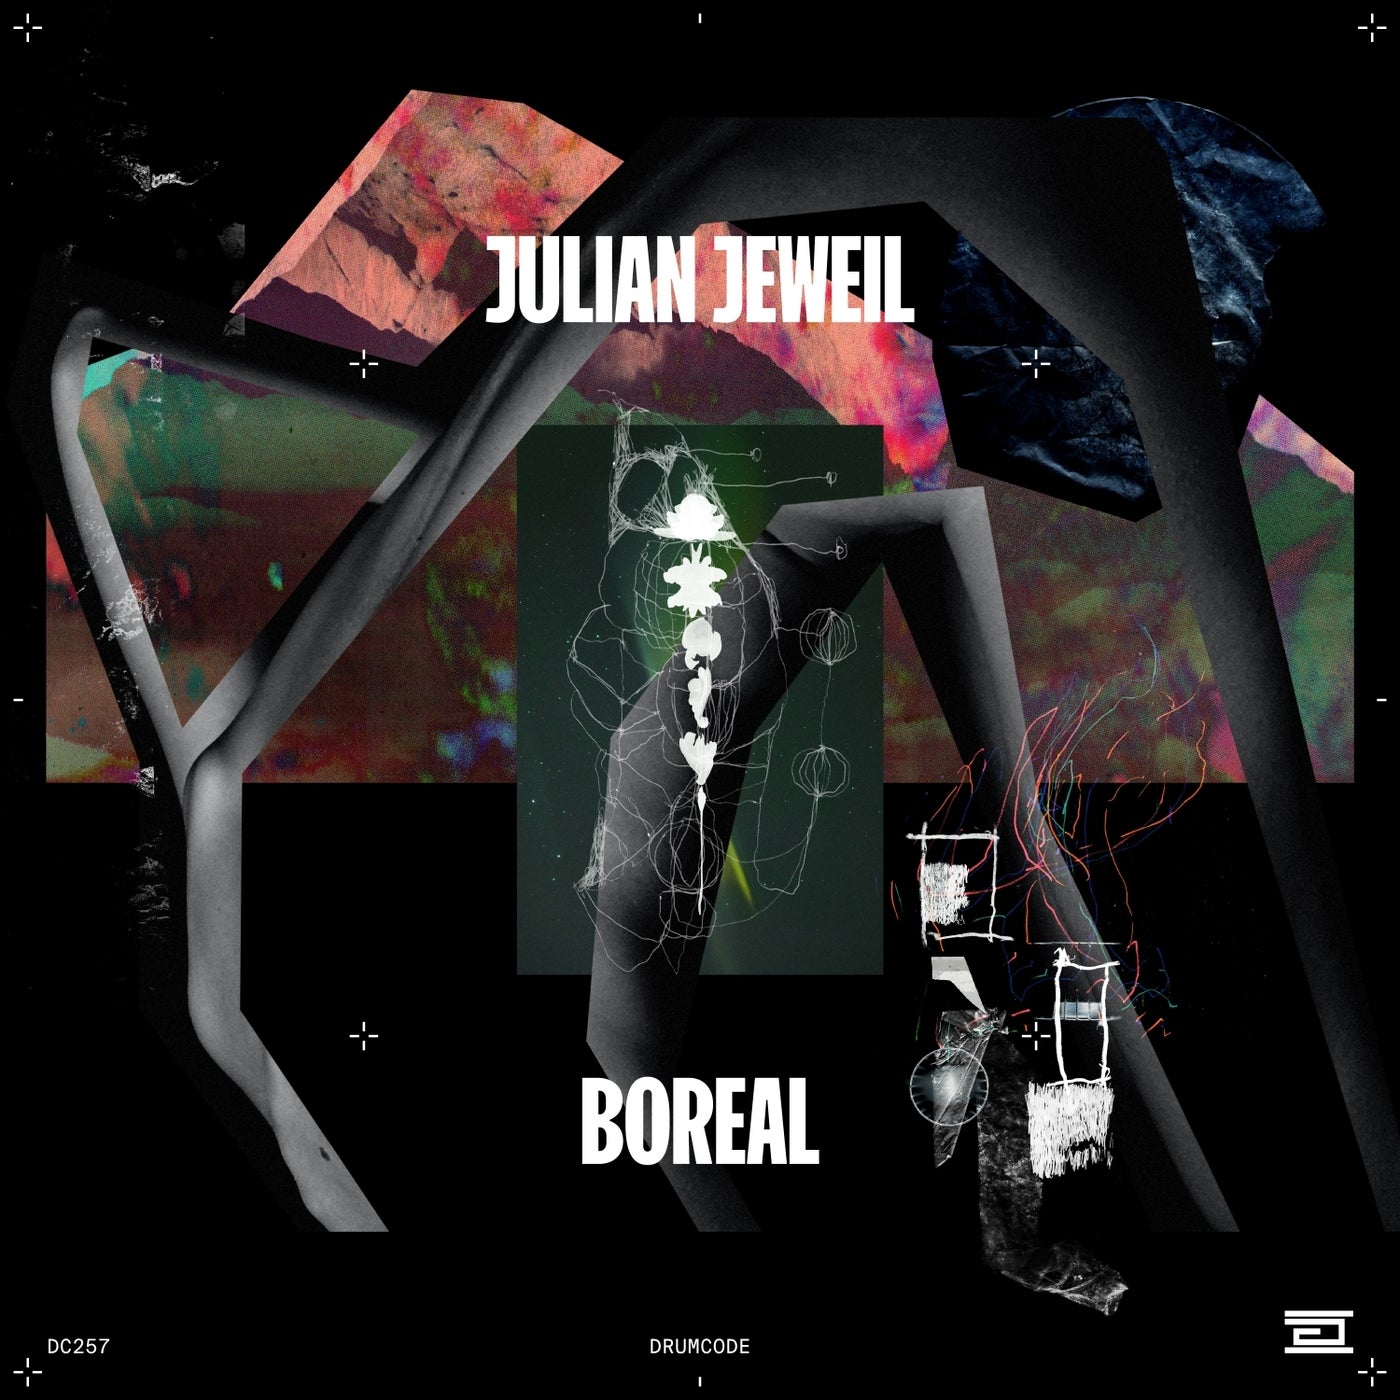 Julian Jeweil - Minuit (Original Mix)